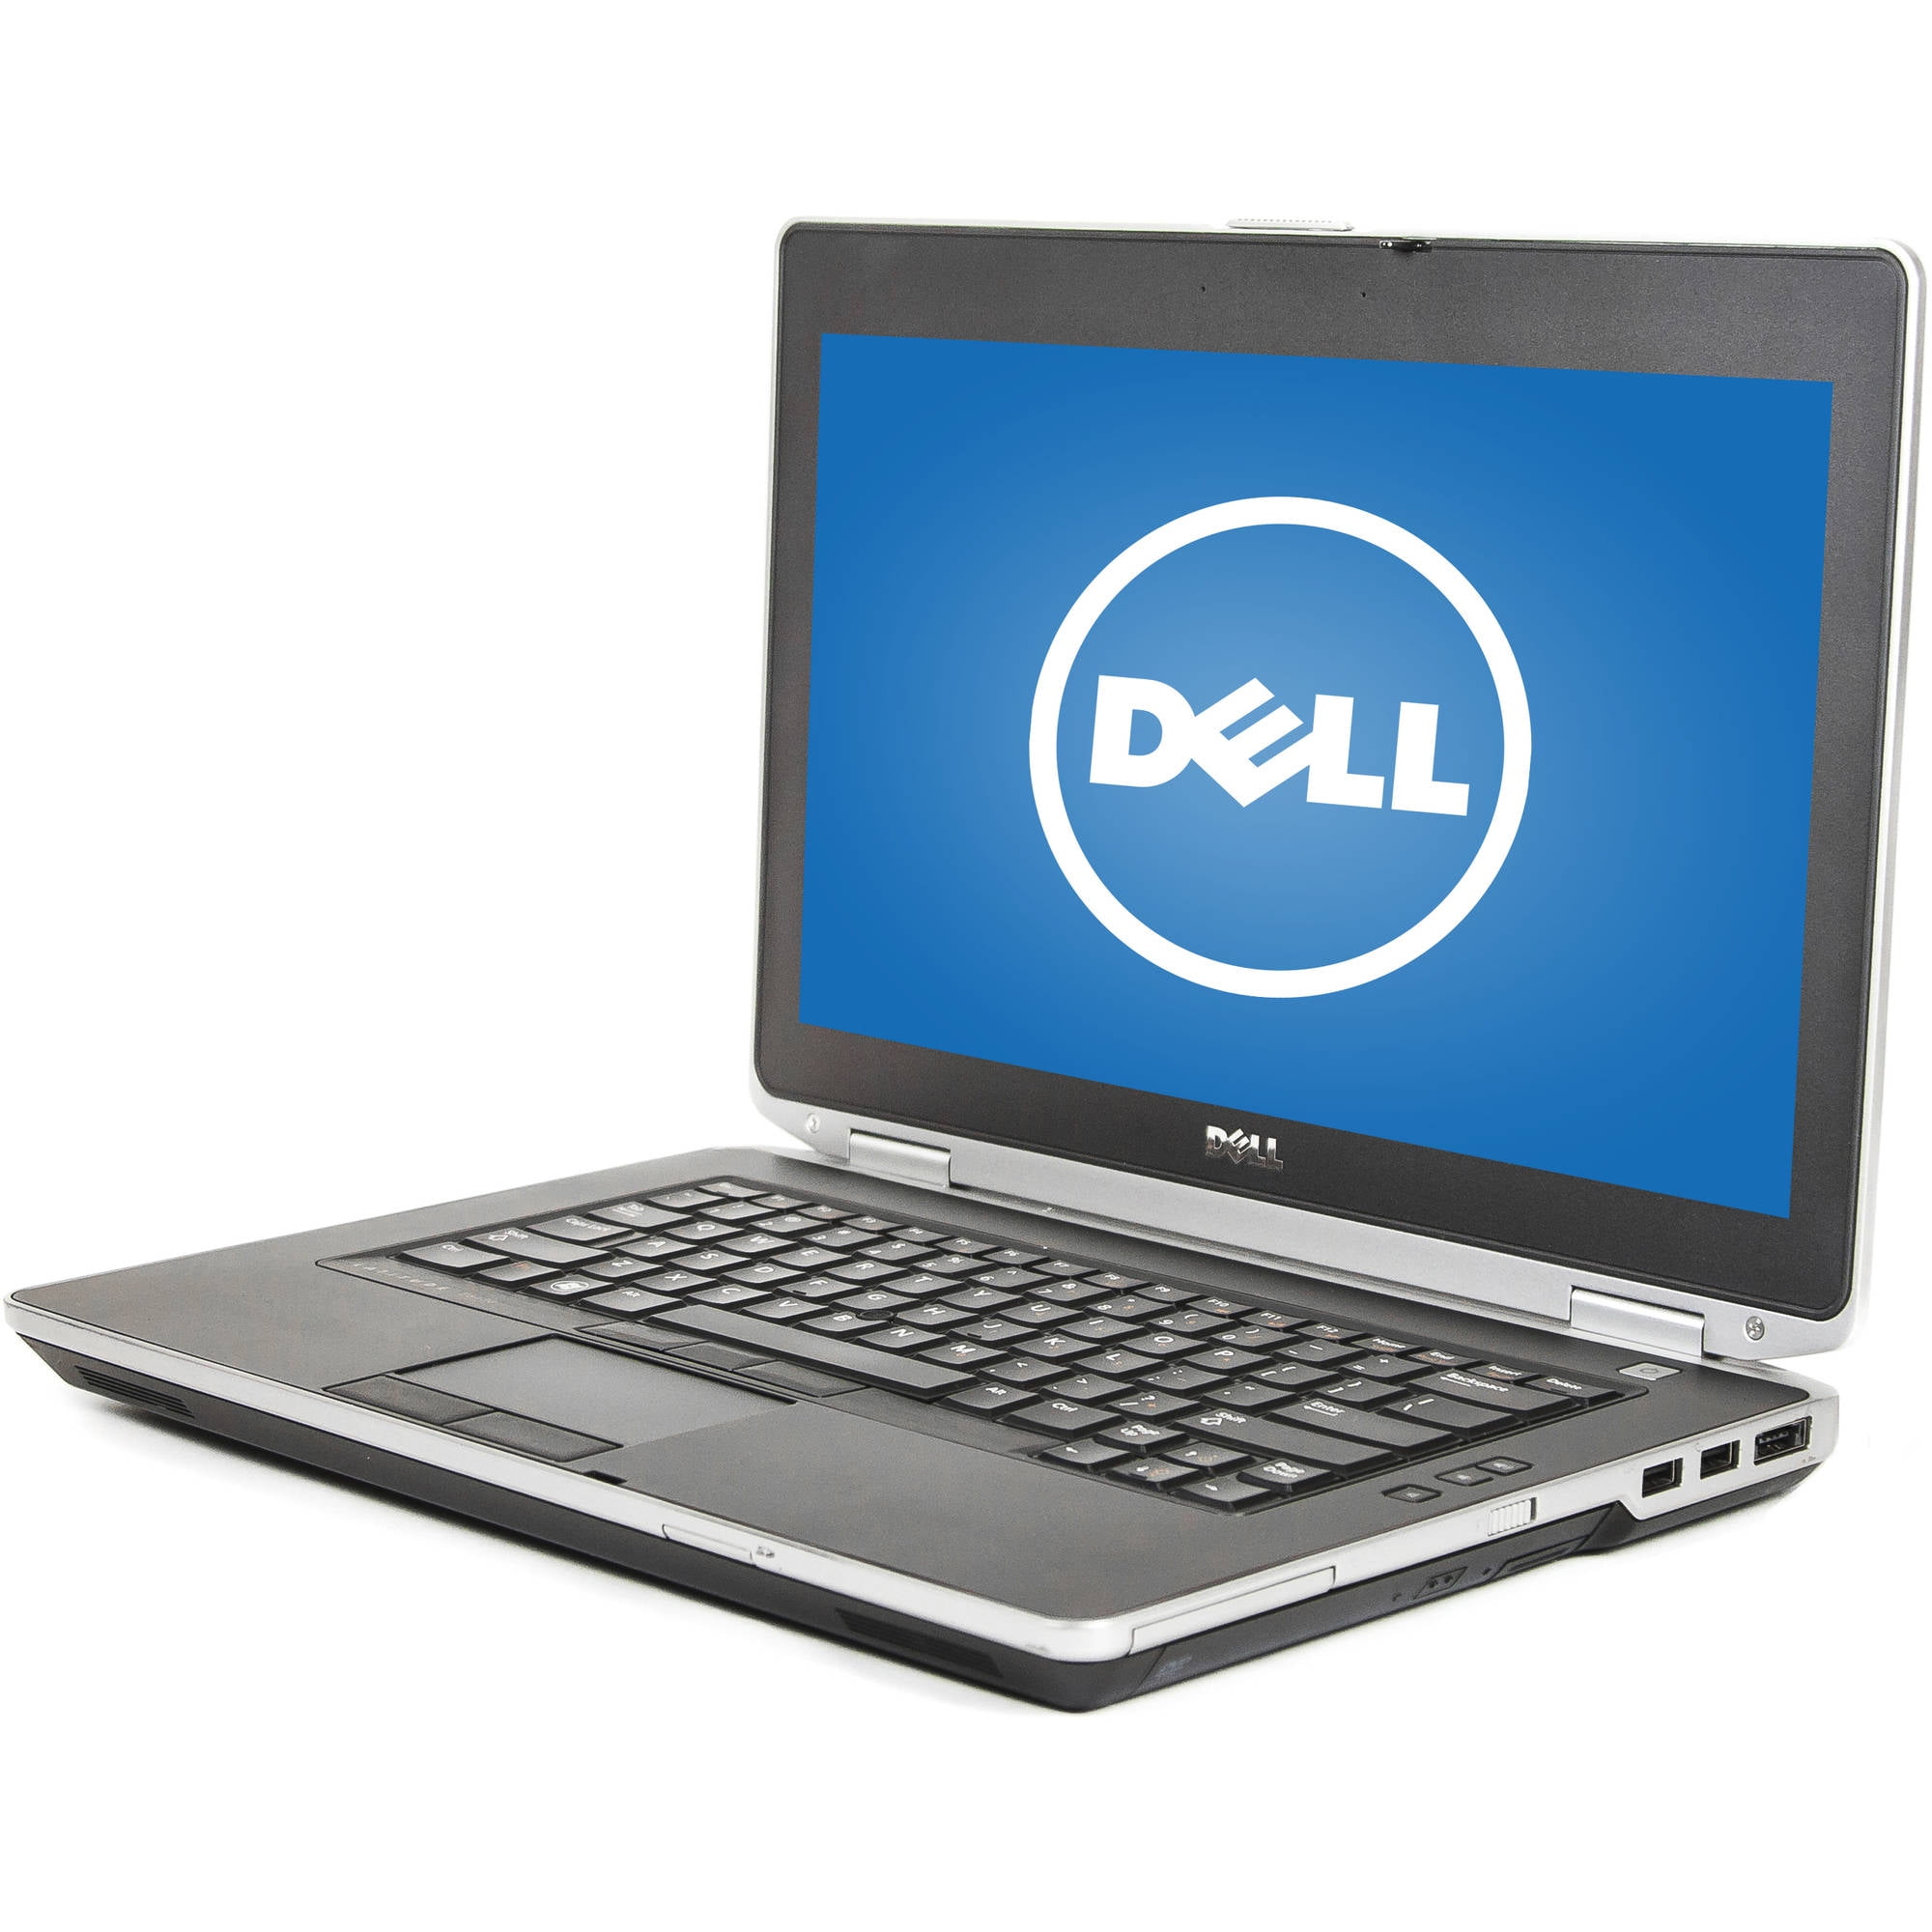 Used Dell 14" E6430 Laptop PC with Intel Core i5-3220M Processor, 8GB